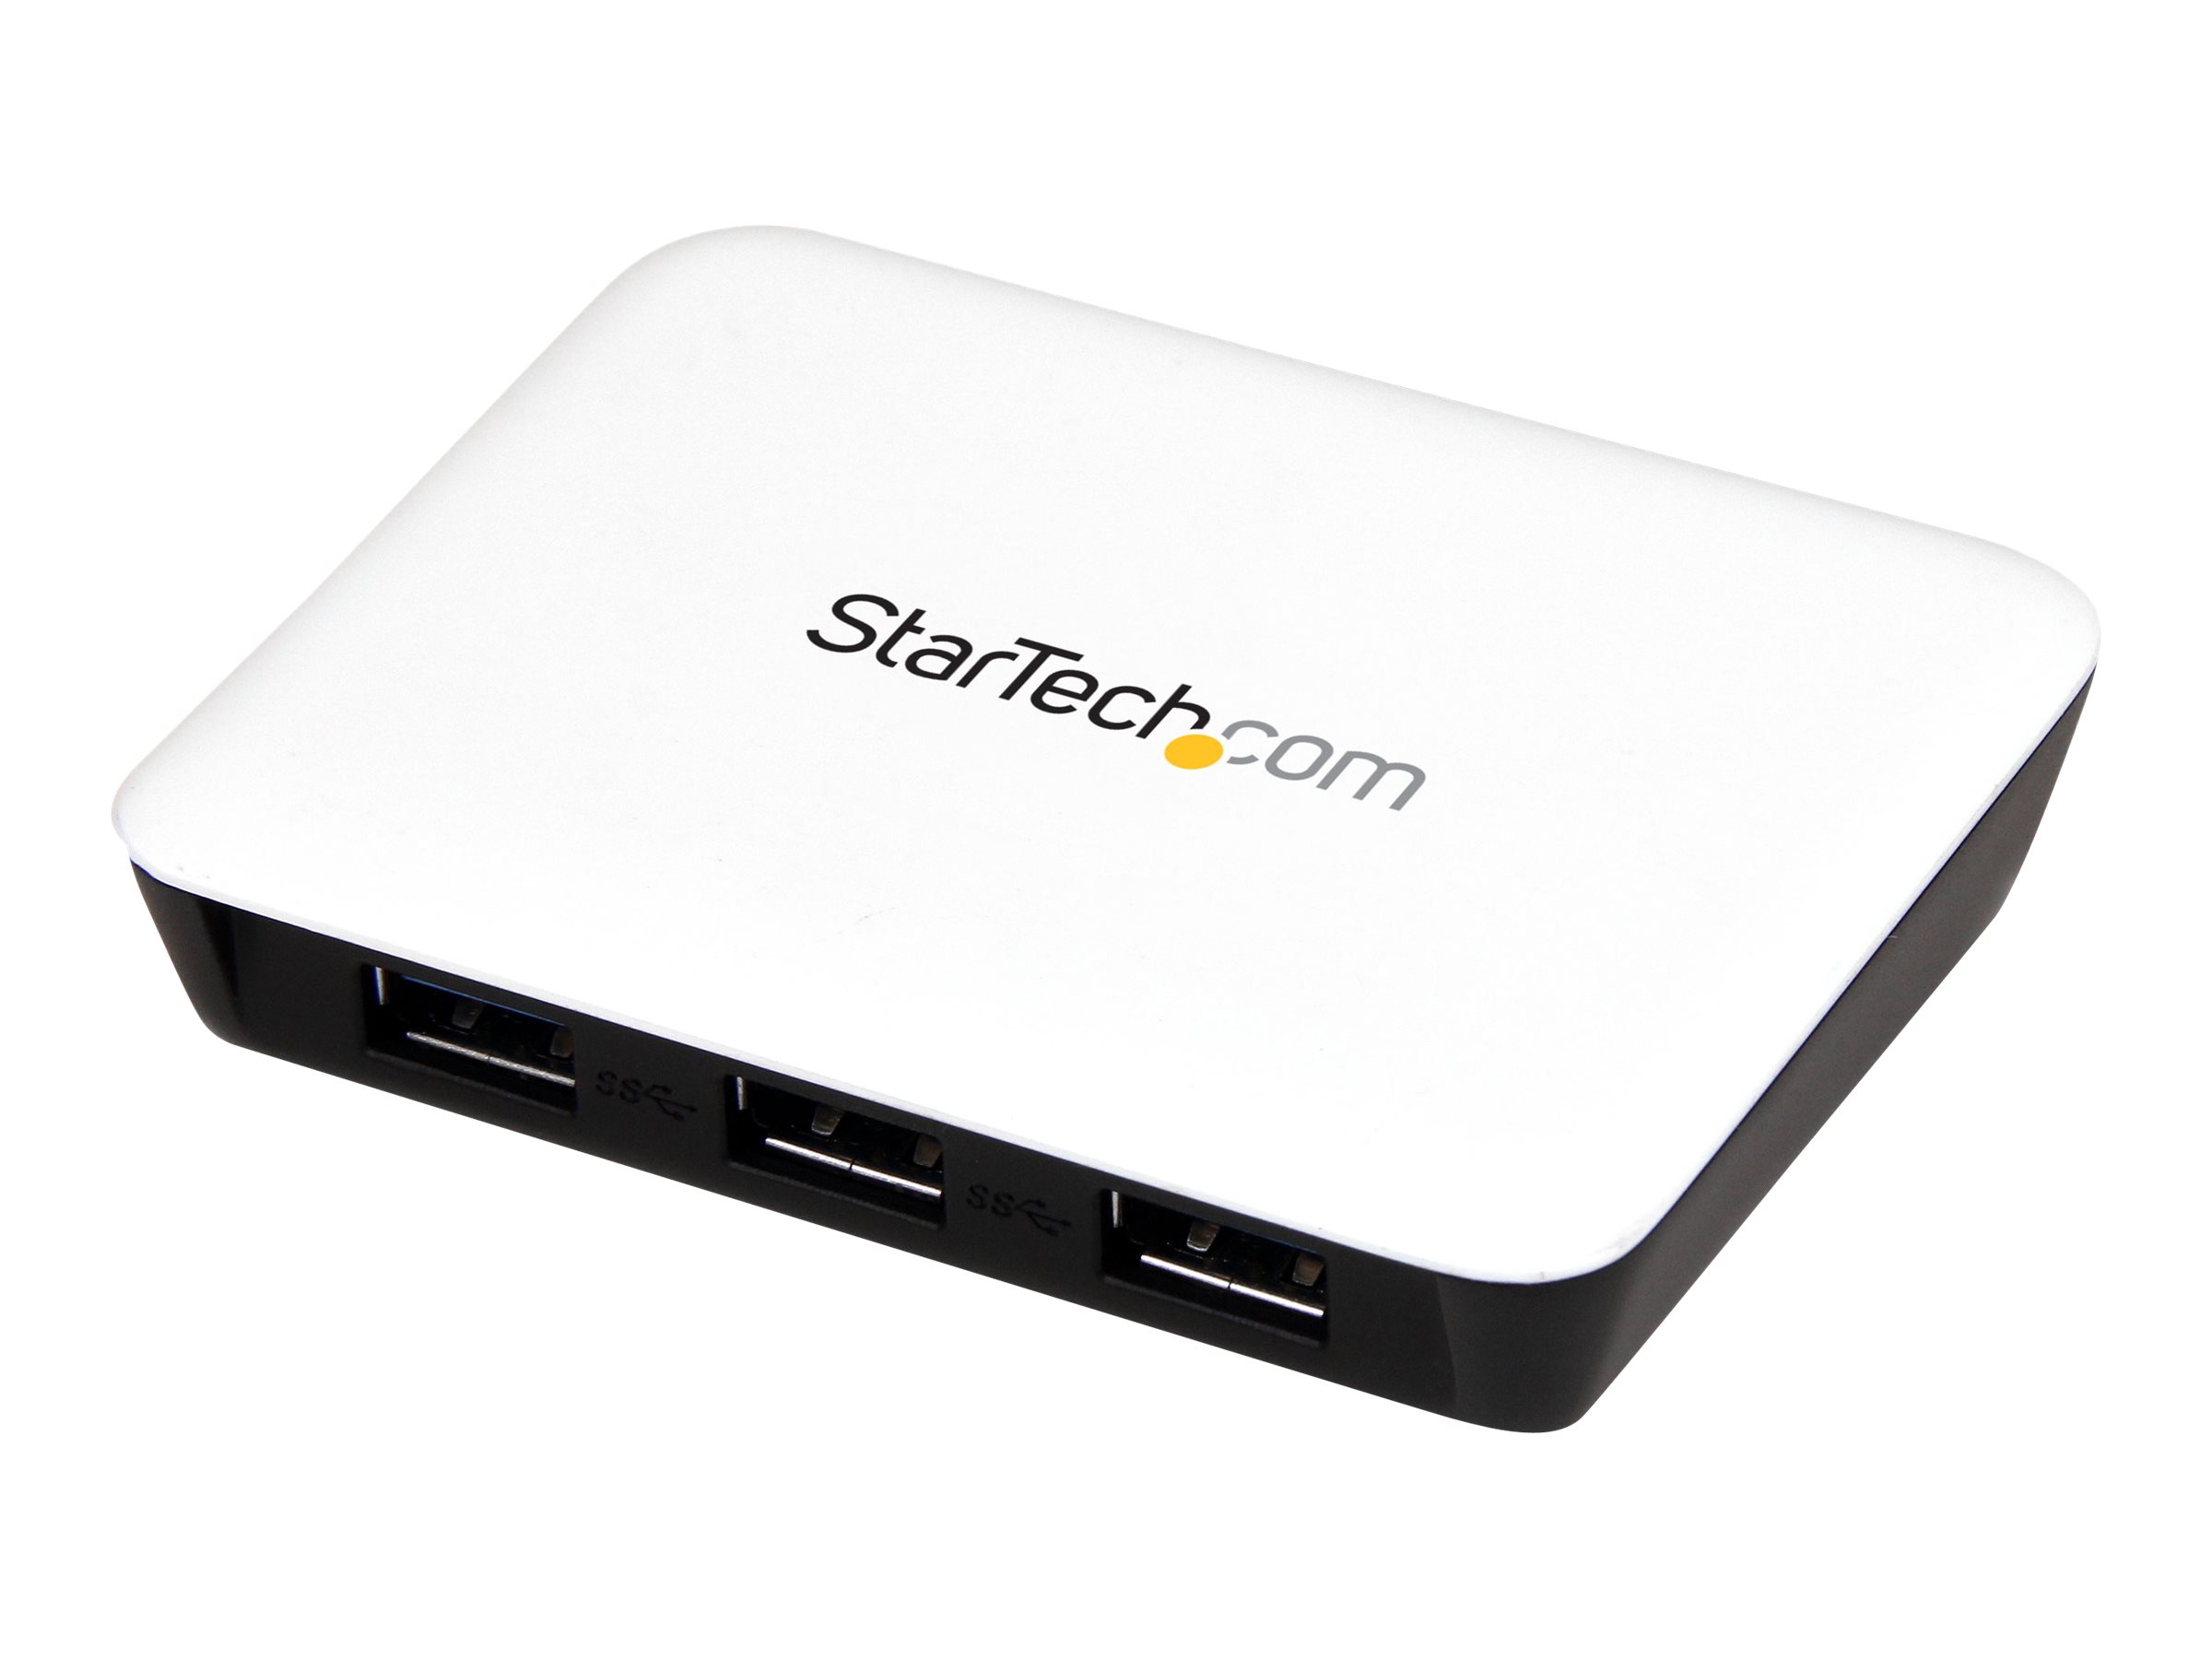 StarTech.com Adaptateur réseau USB 3.0 vers Gigabit Ethernet avec hub USB 3.0 de 3 ports - Concentrateur USB 3 auto alimenté - Blanc - Concentrateur (hub) - 3 x SuperSpeed USB 3.0 + 1 x 10/100/1000 - de bureau - ST3300U3S - Concentrateurs USB